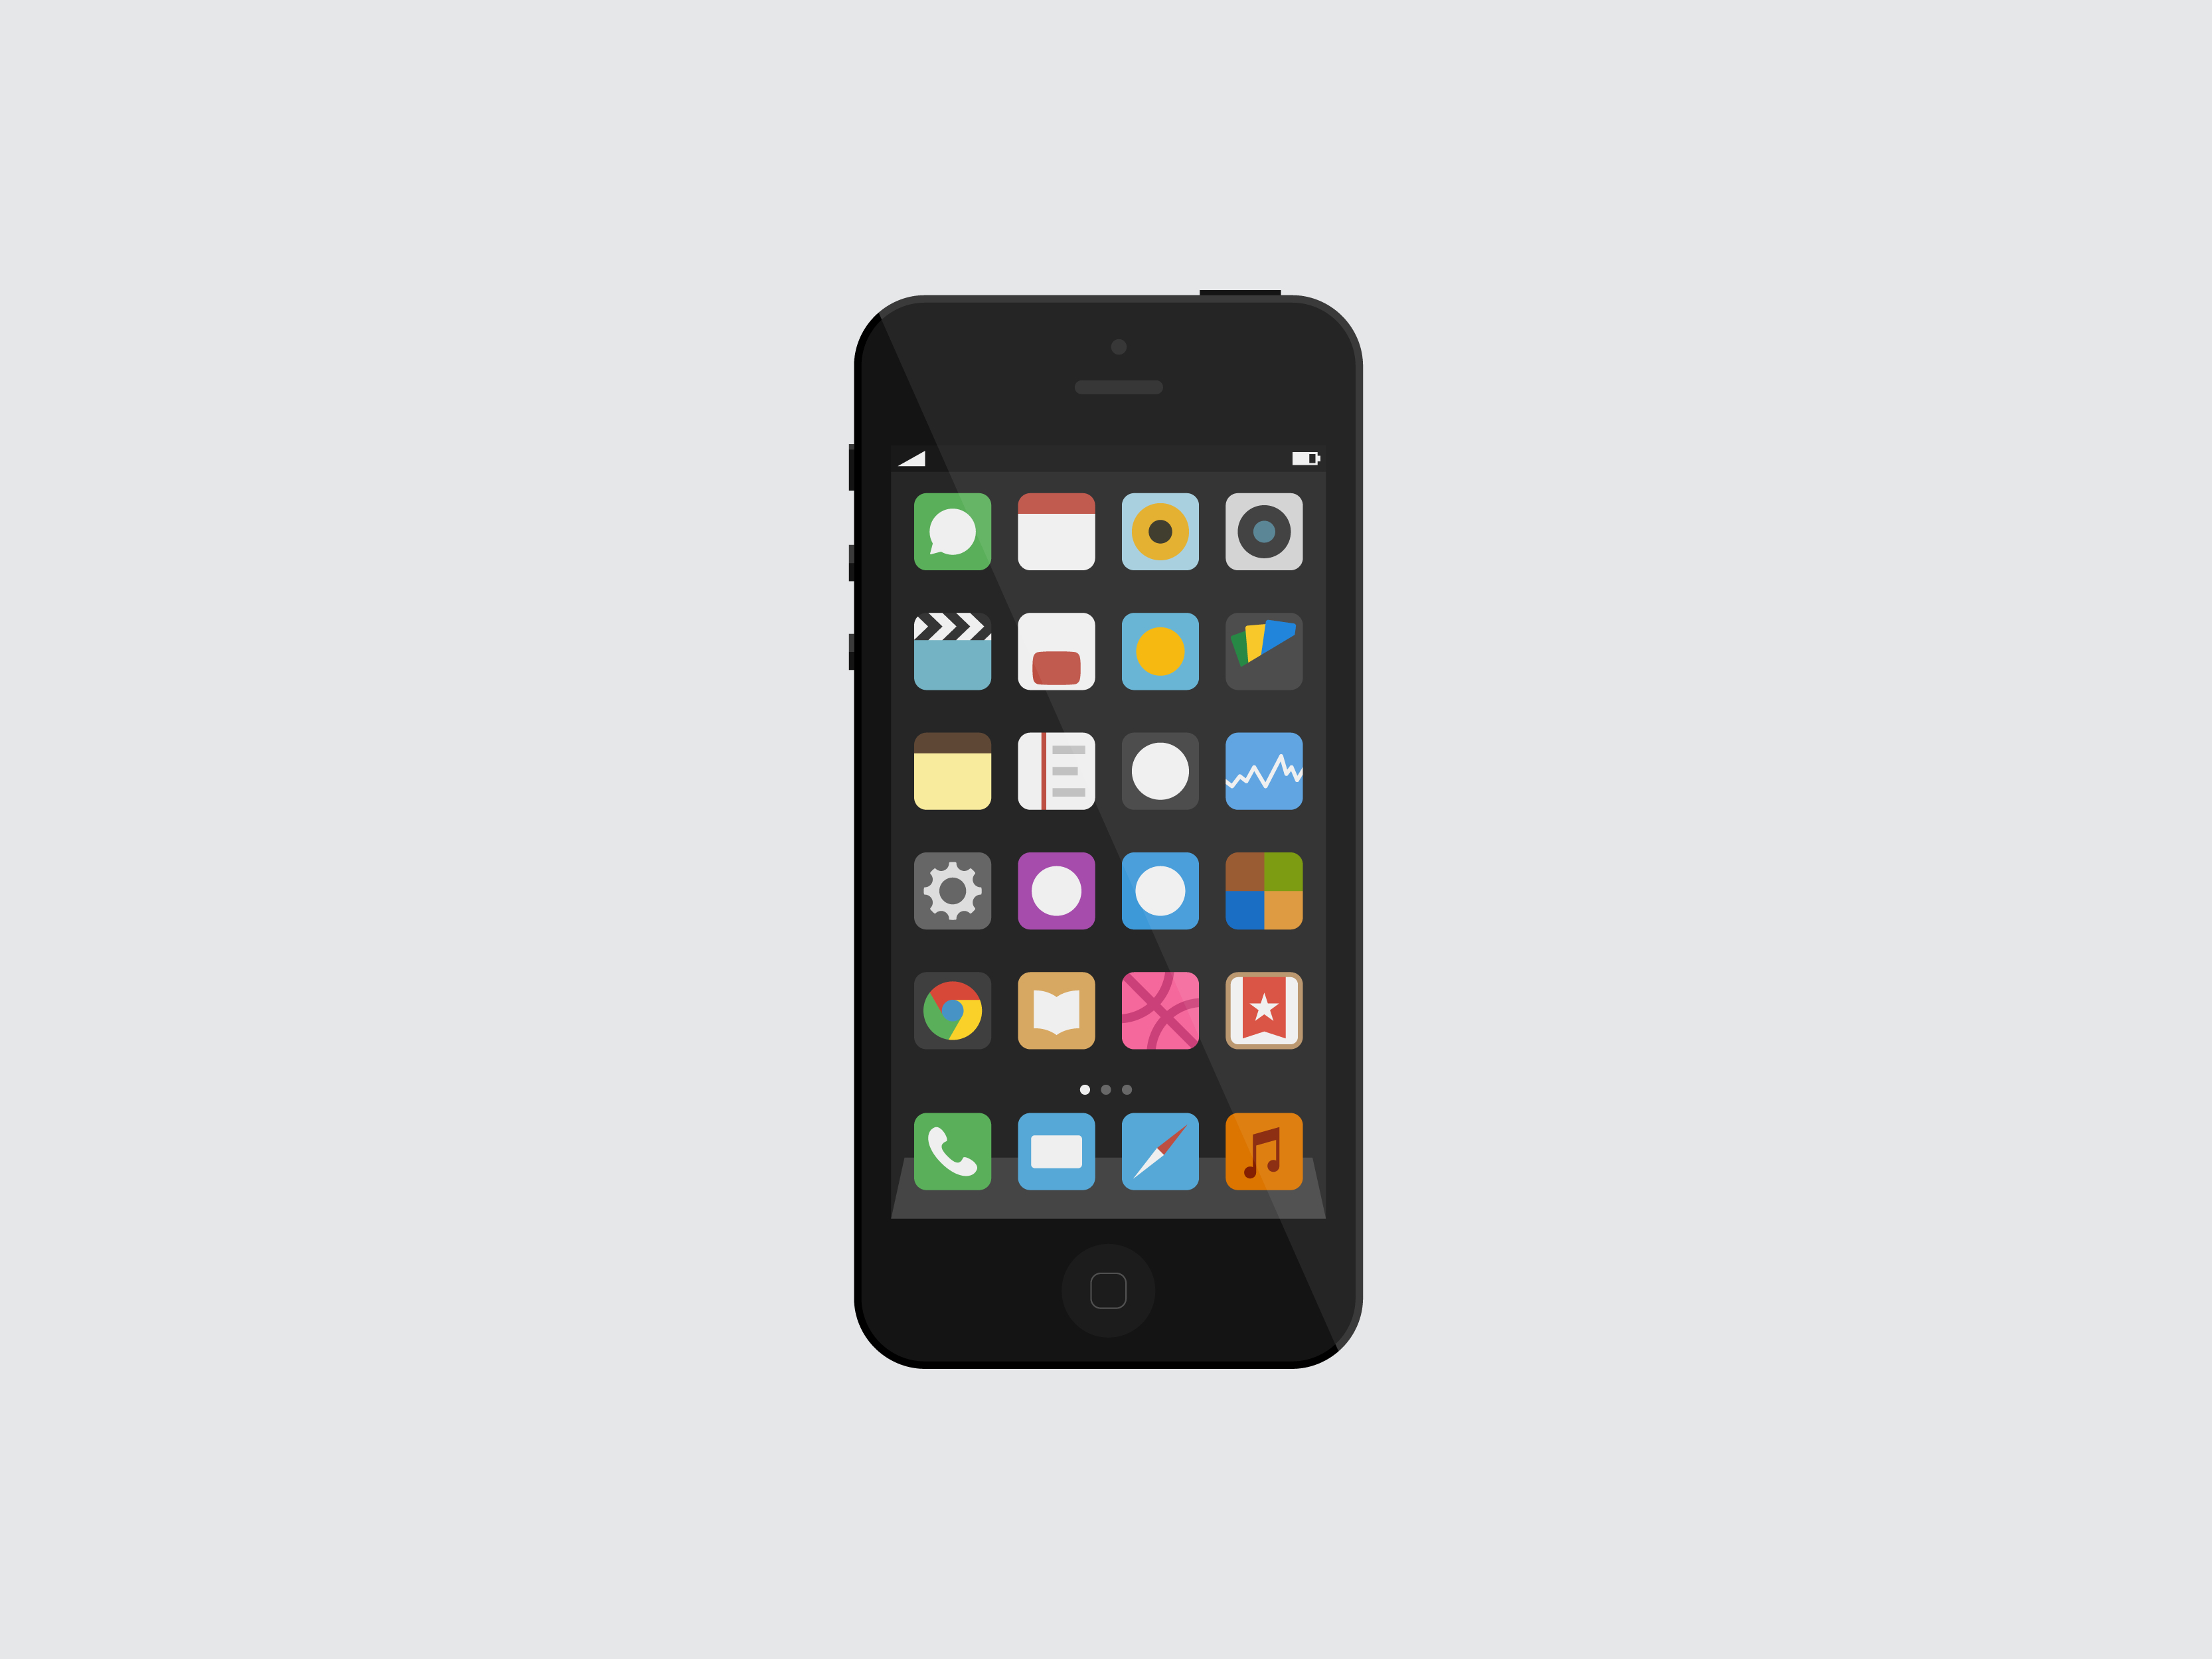 Flat iOS iPhone 5 mockup vector